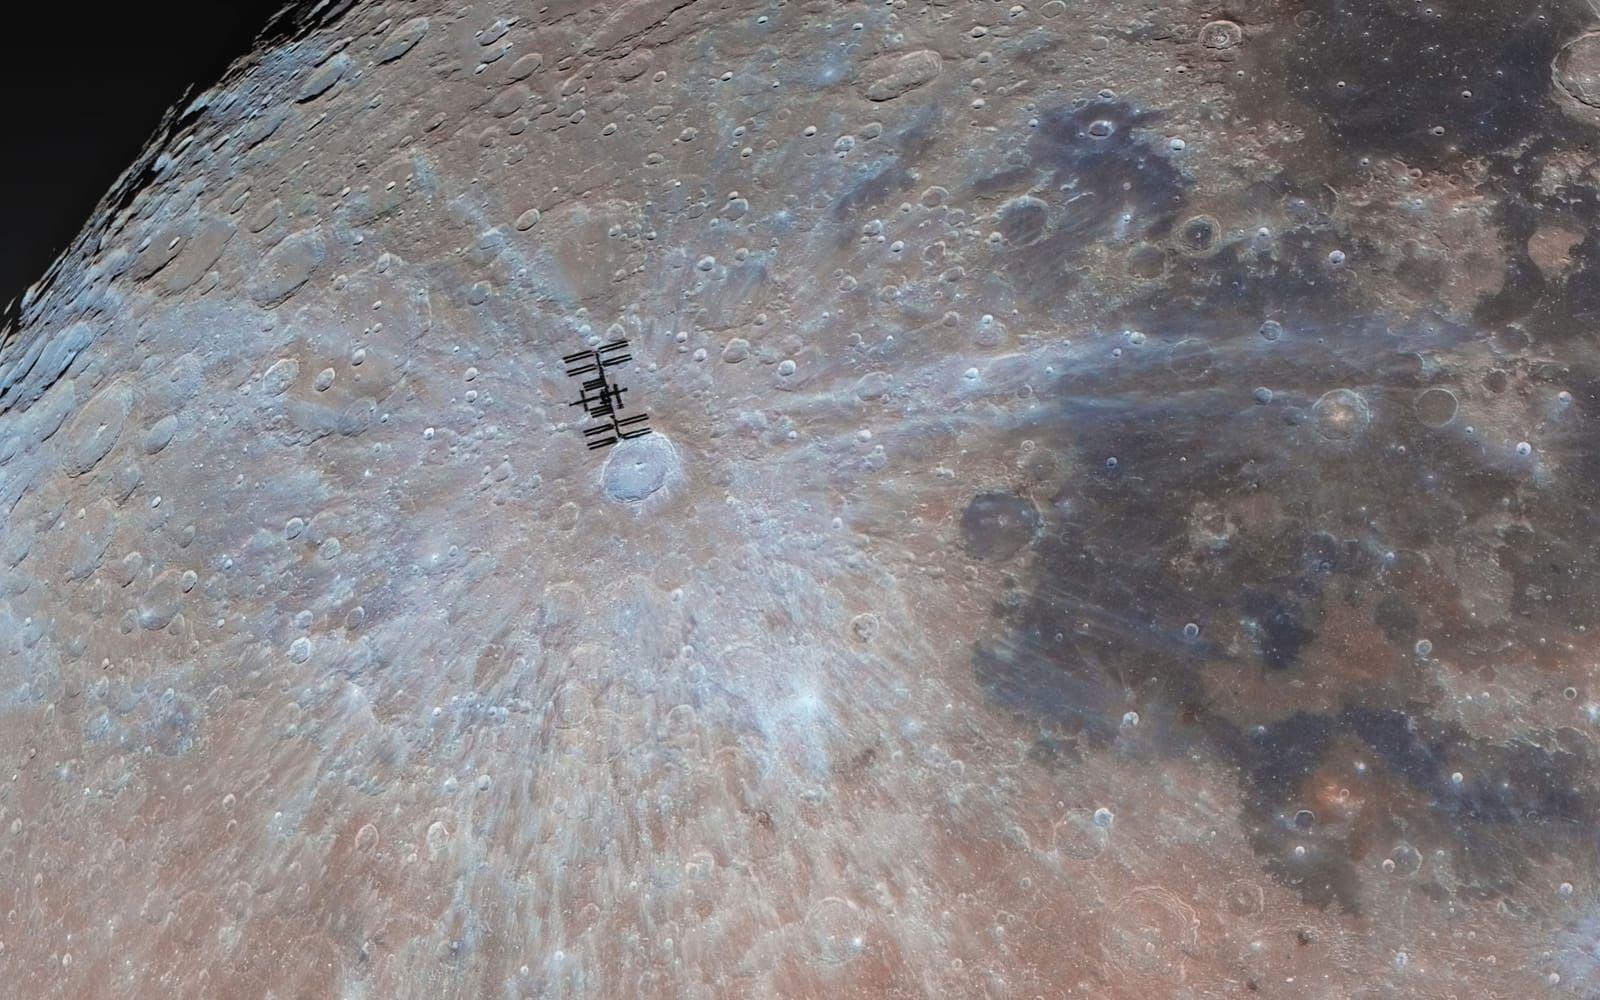 <strong id="strong-e216702c212e283d653fe3c1888f2558">A Visit to Tycho</strong>. Den internationella rymdstationen ISS syns här på precis bredvid Tycho-kratern på månen. Perspektivet får det att se ut som att rymdstationen cirkulerar runt månen, menar domarna. Bilden kom på andra plats i kategorin Människor och rymden. 